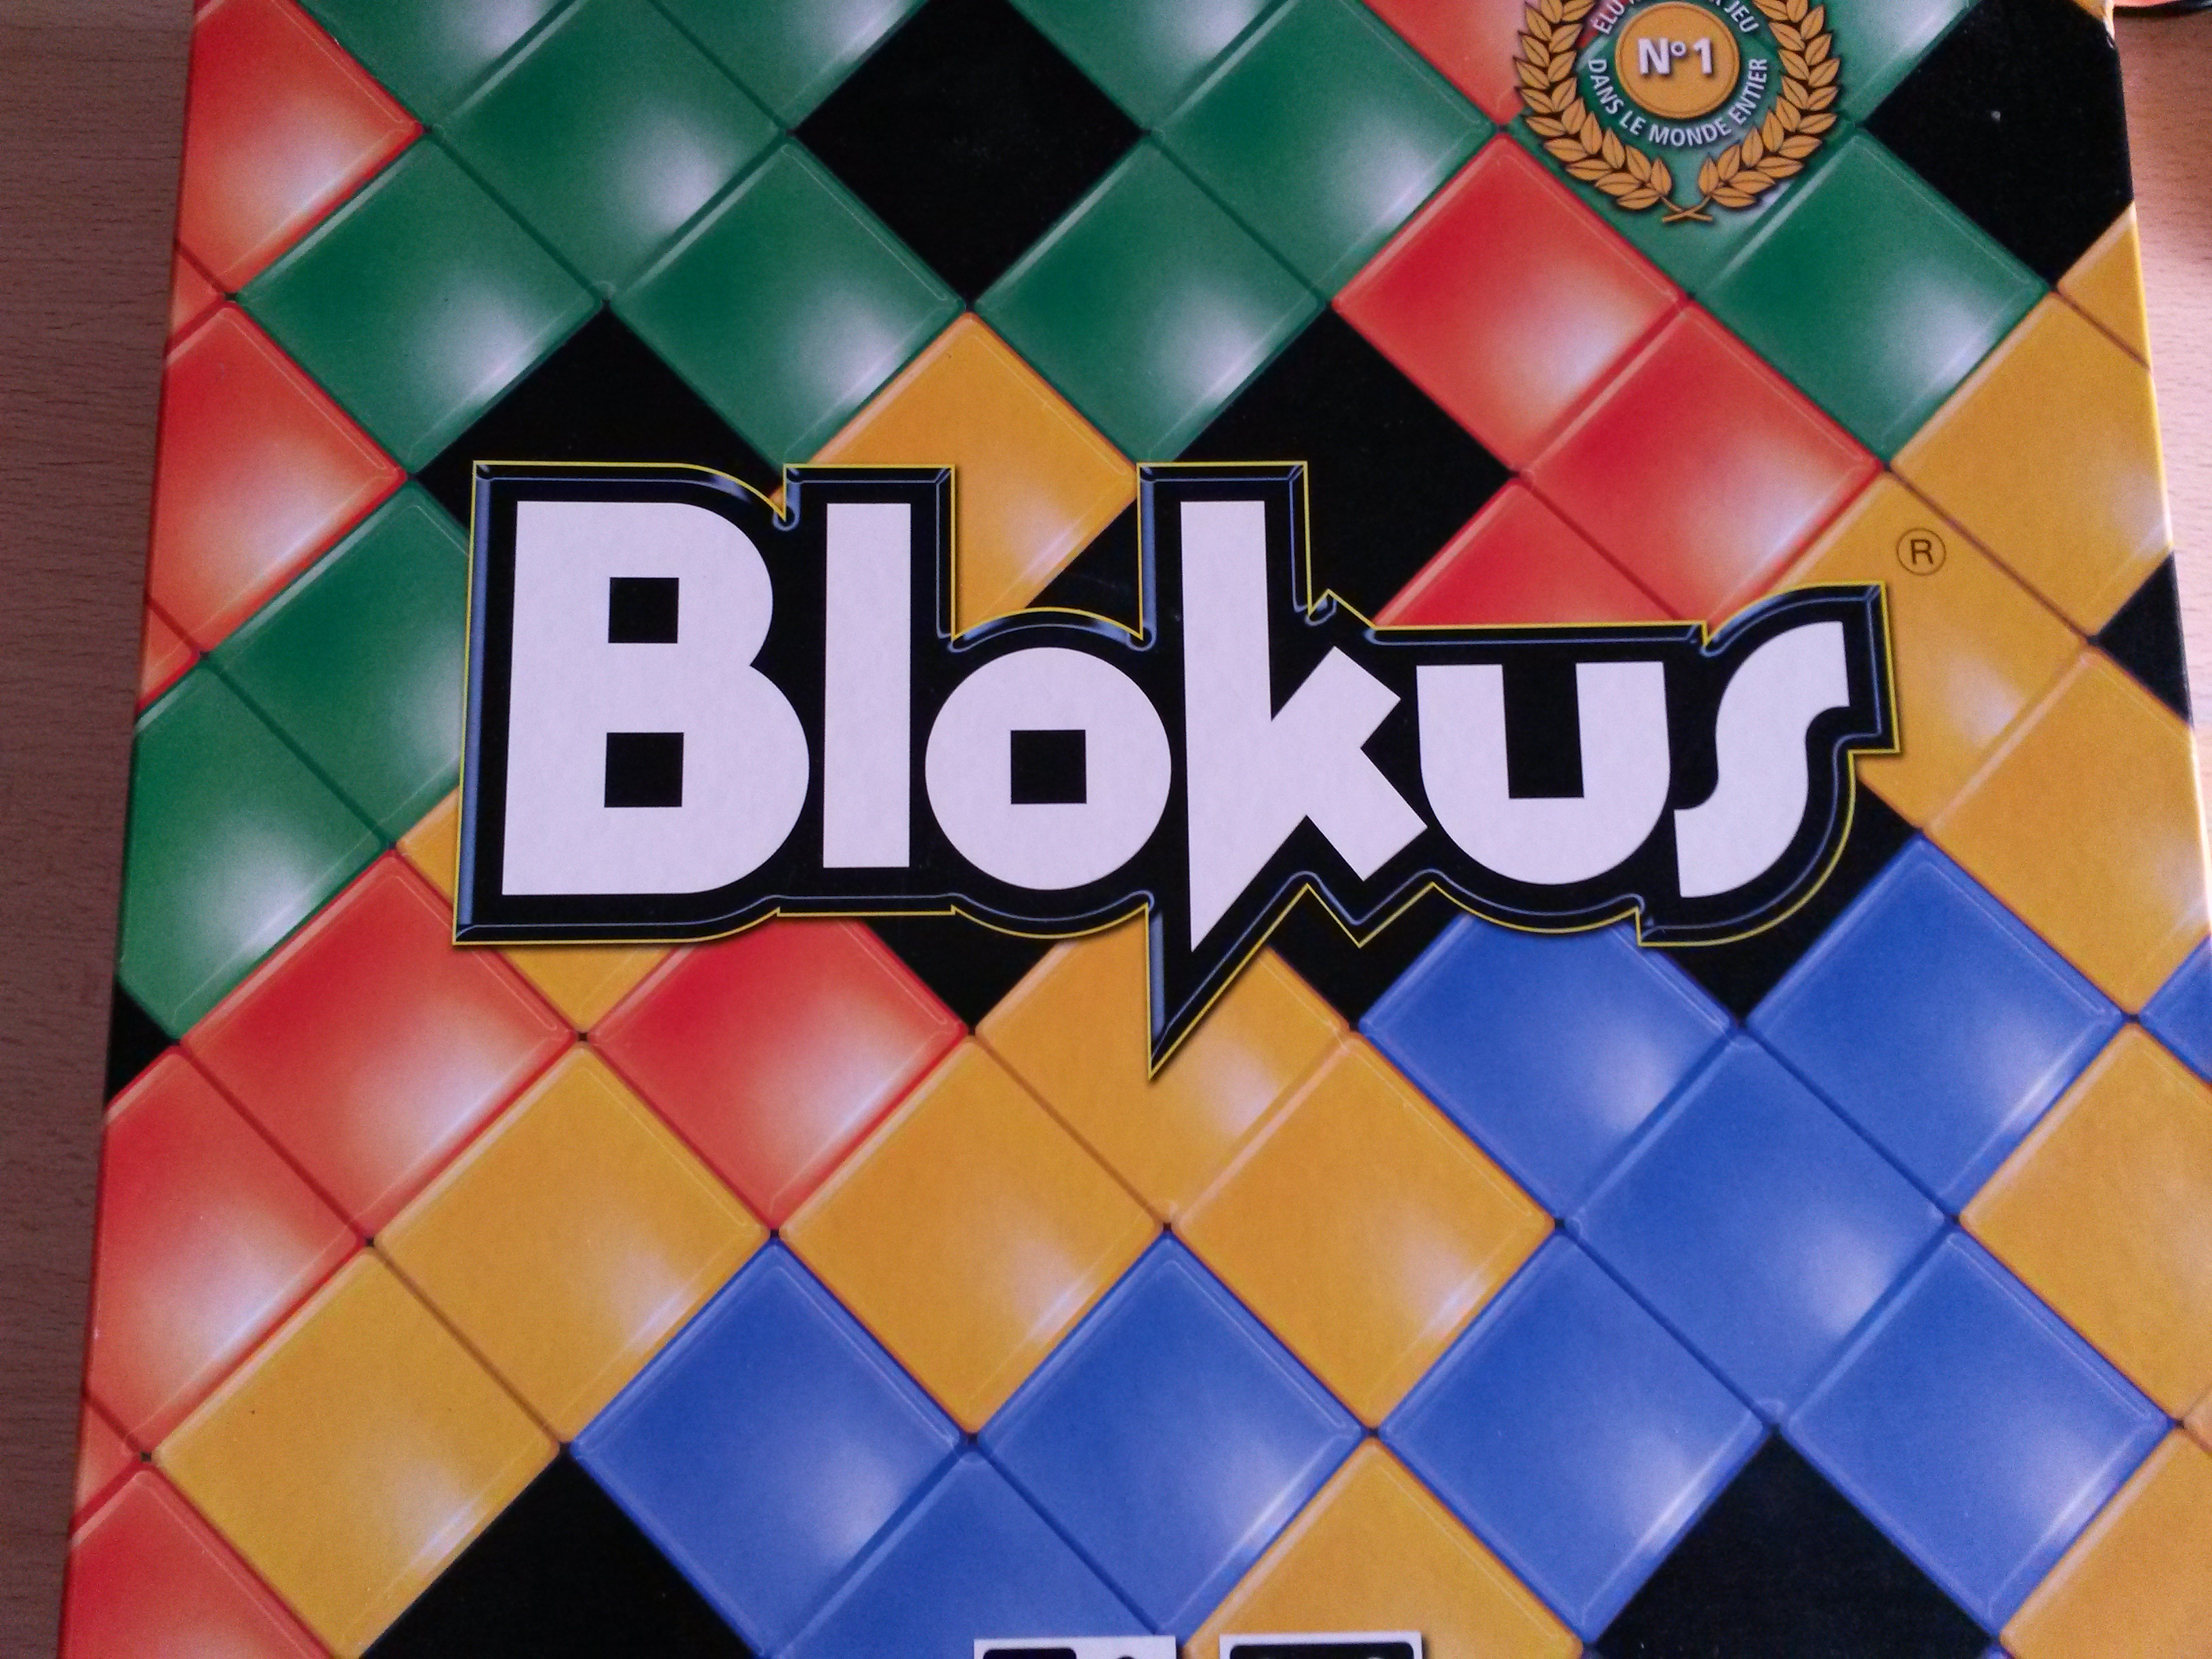 Blokus, un jeu de logique et de stratégie dès 5 ans